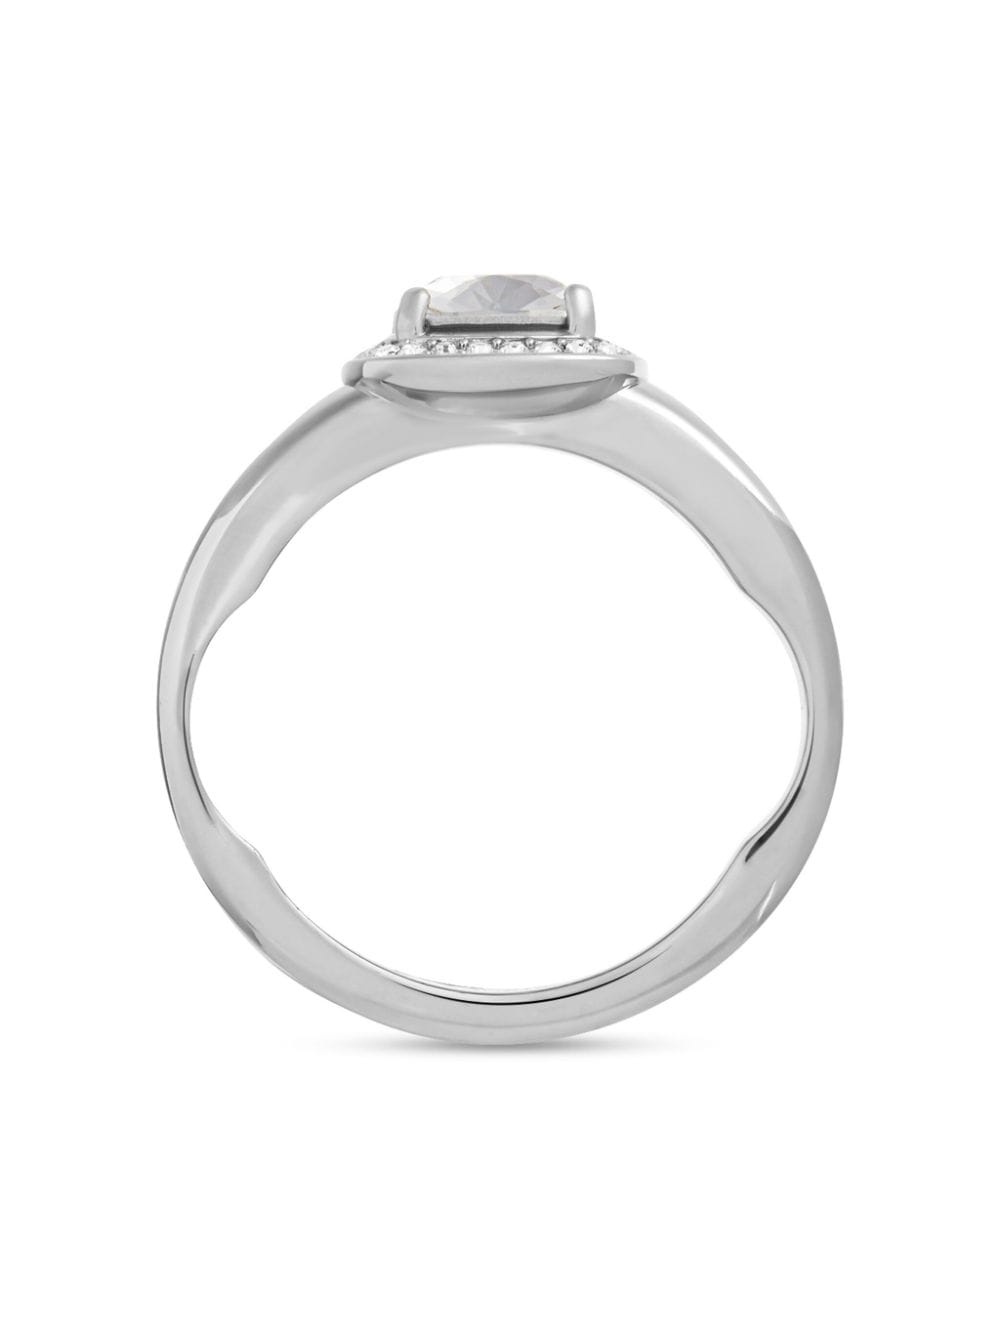 crystal-embellished polished-finish ring - 3